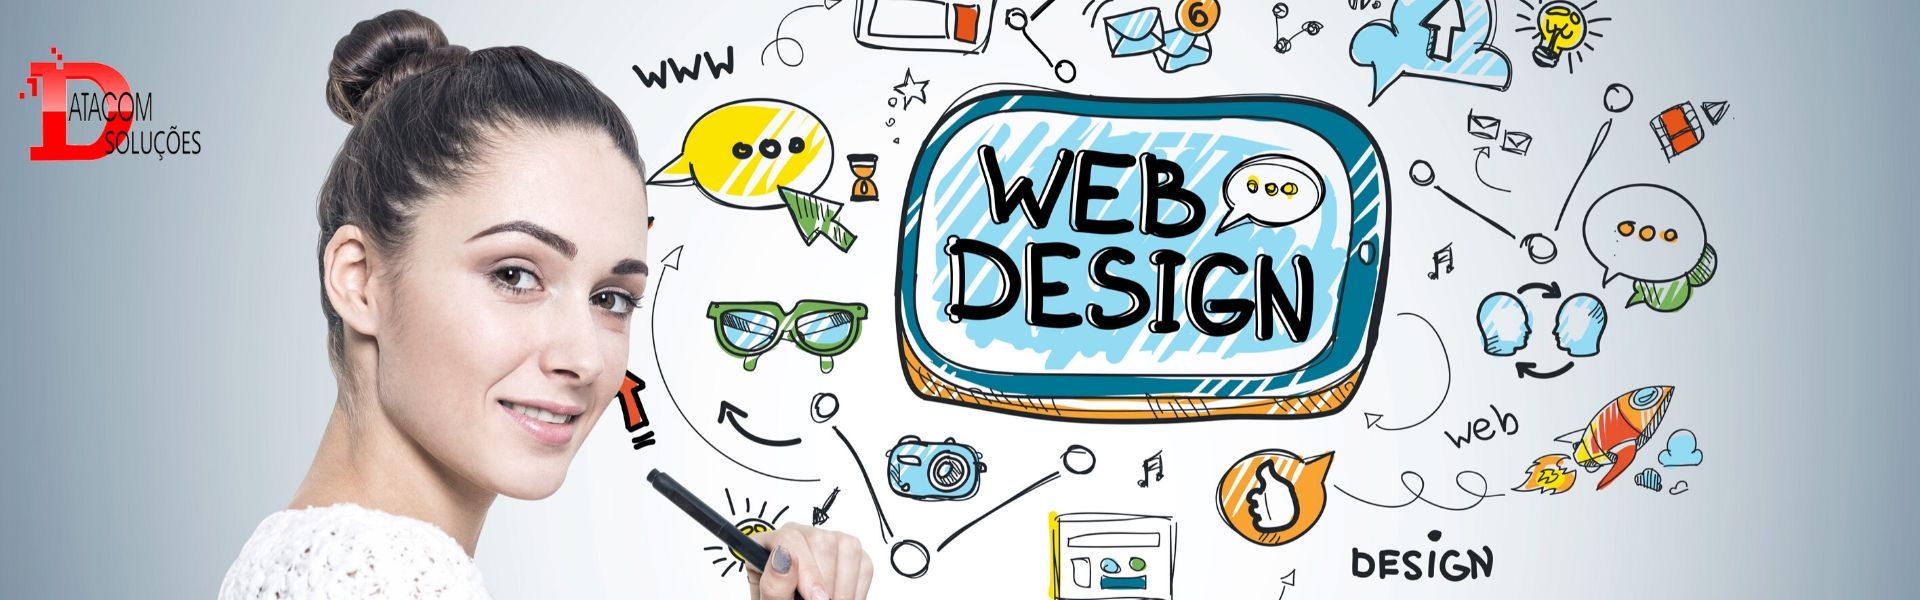 web designer criação de sites responsivos